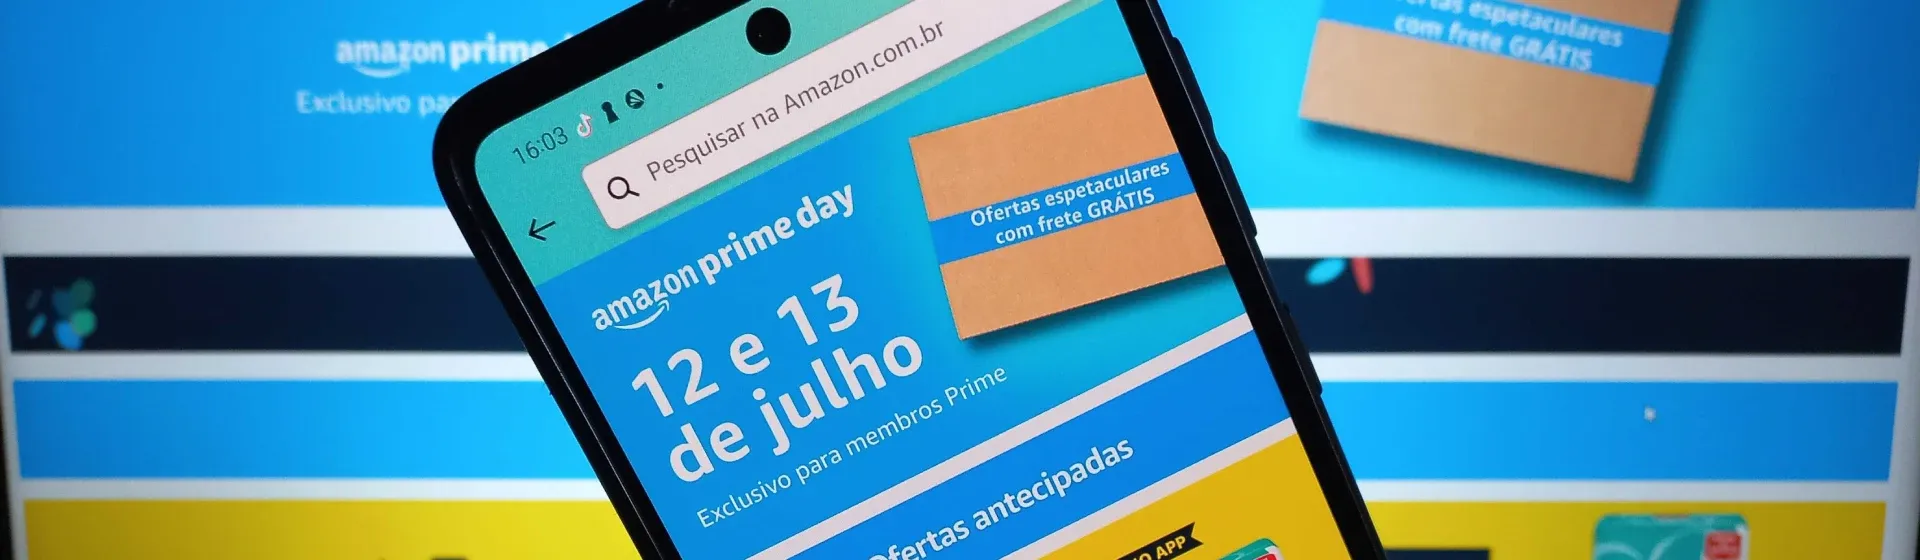 Foto de um celular na frente da tela de um notebook mostrando o app da Amazon 